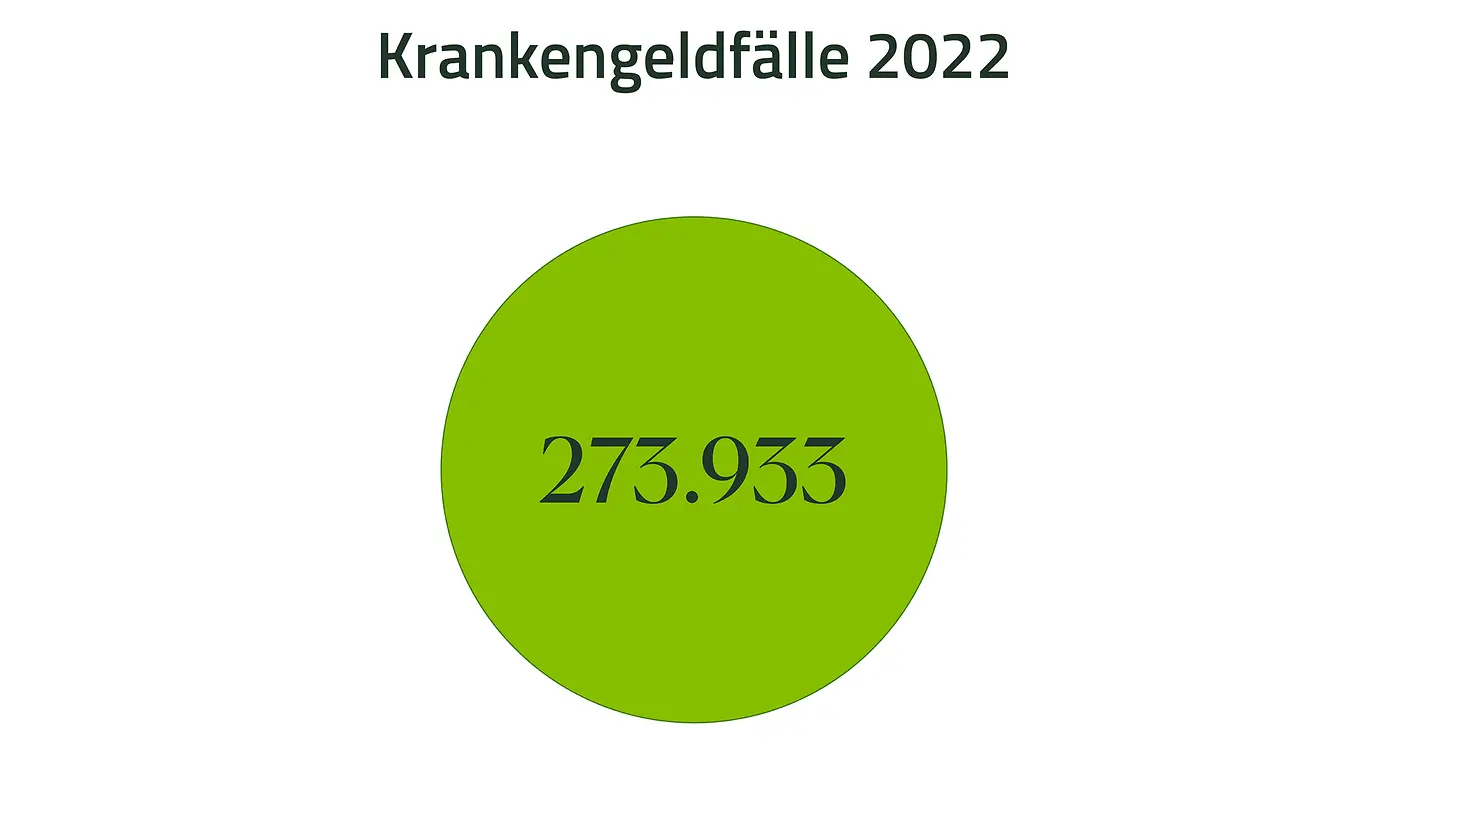 Grafik mit der Zahl 273.933 für Krankengeldfälle 2022